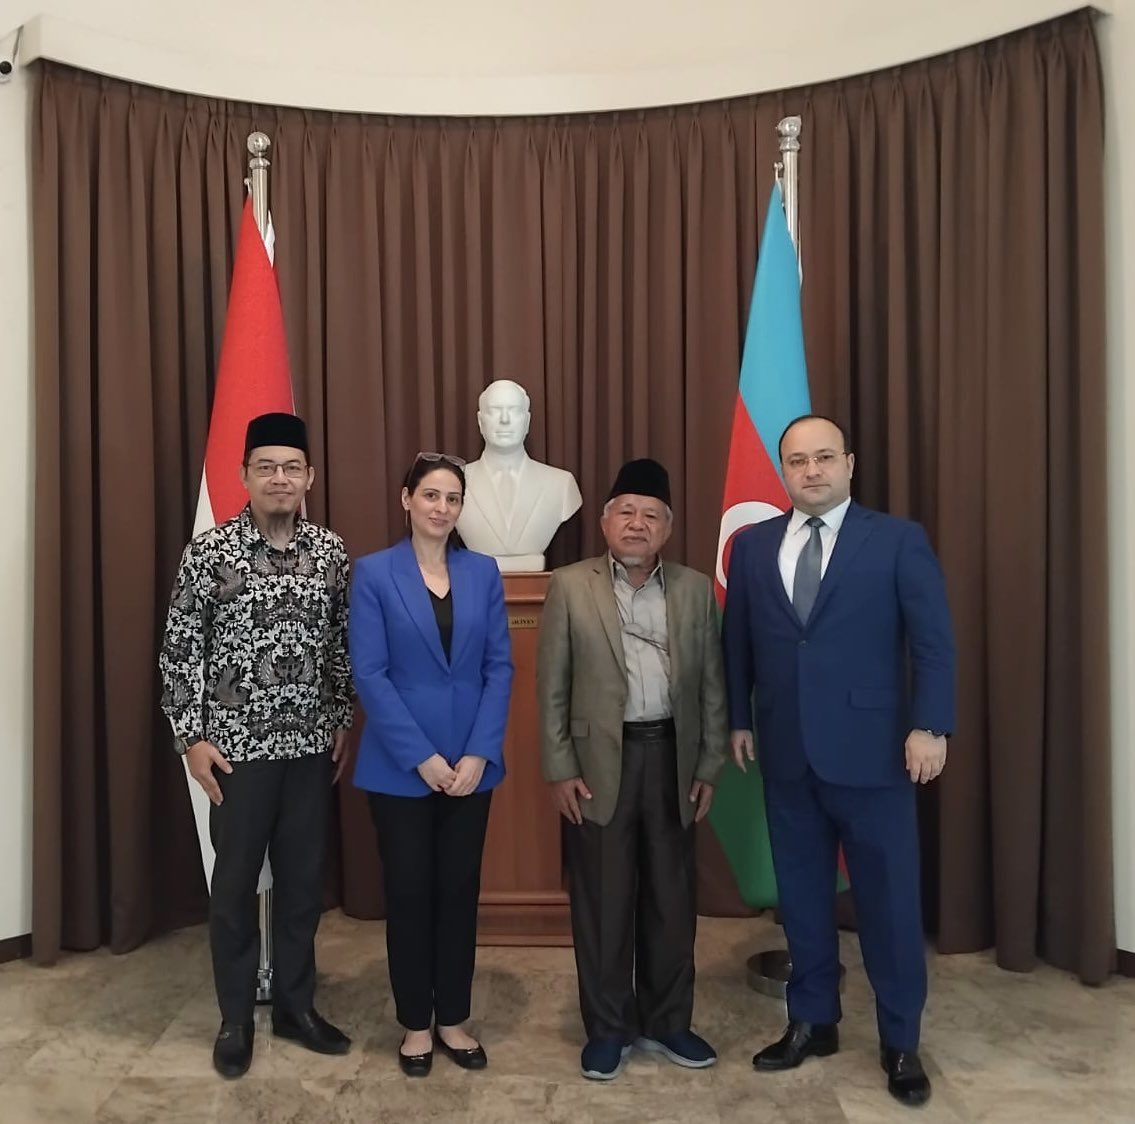 Senang menerima kedatangan Dr. Muhyiddin Junaidi, Wakil Ketua Dewan Pertimbangan Majelis Ulama Indonesia. Membahas Forum Dunia Dialog Antarbudaya ke-6 yang akan diadakan di #Baku, pada 1-3 Mei 2024. #Indonesia #Azerbaijan #WFID6